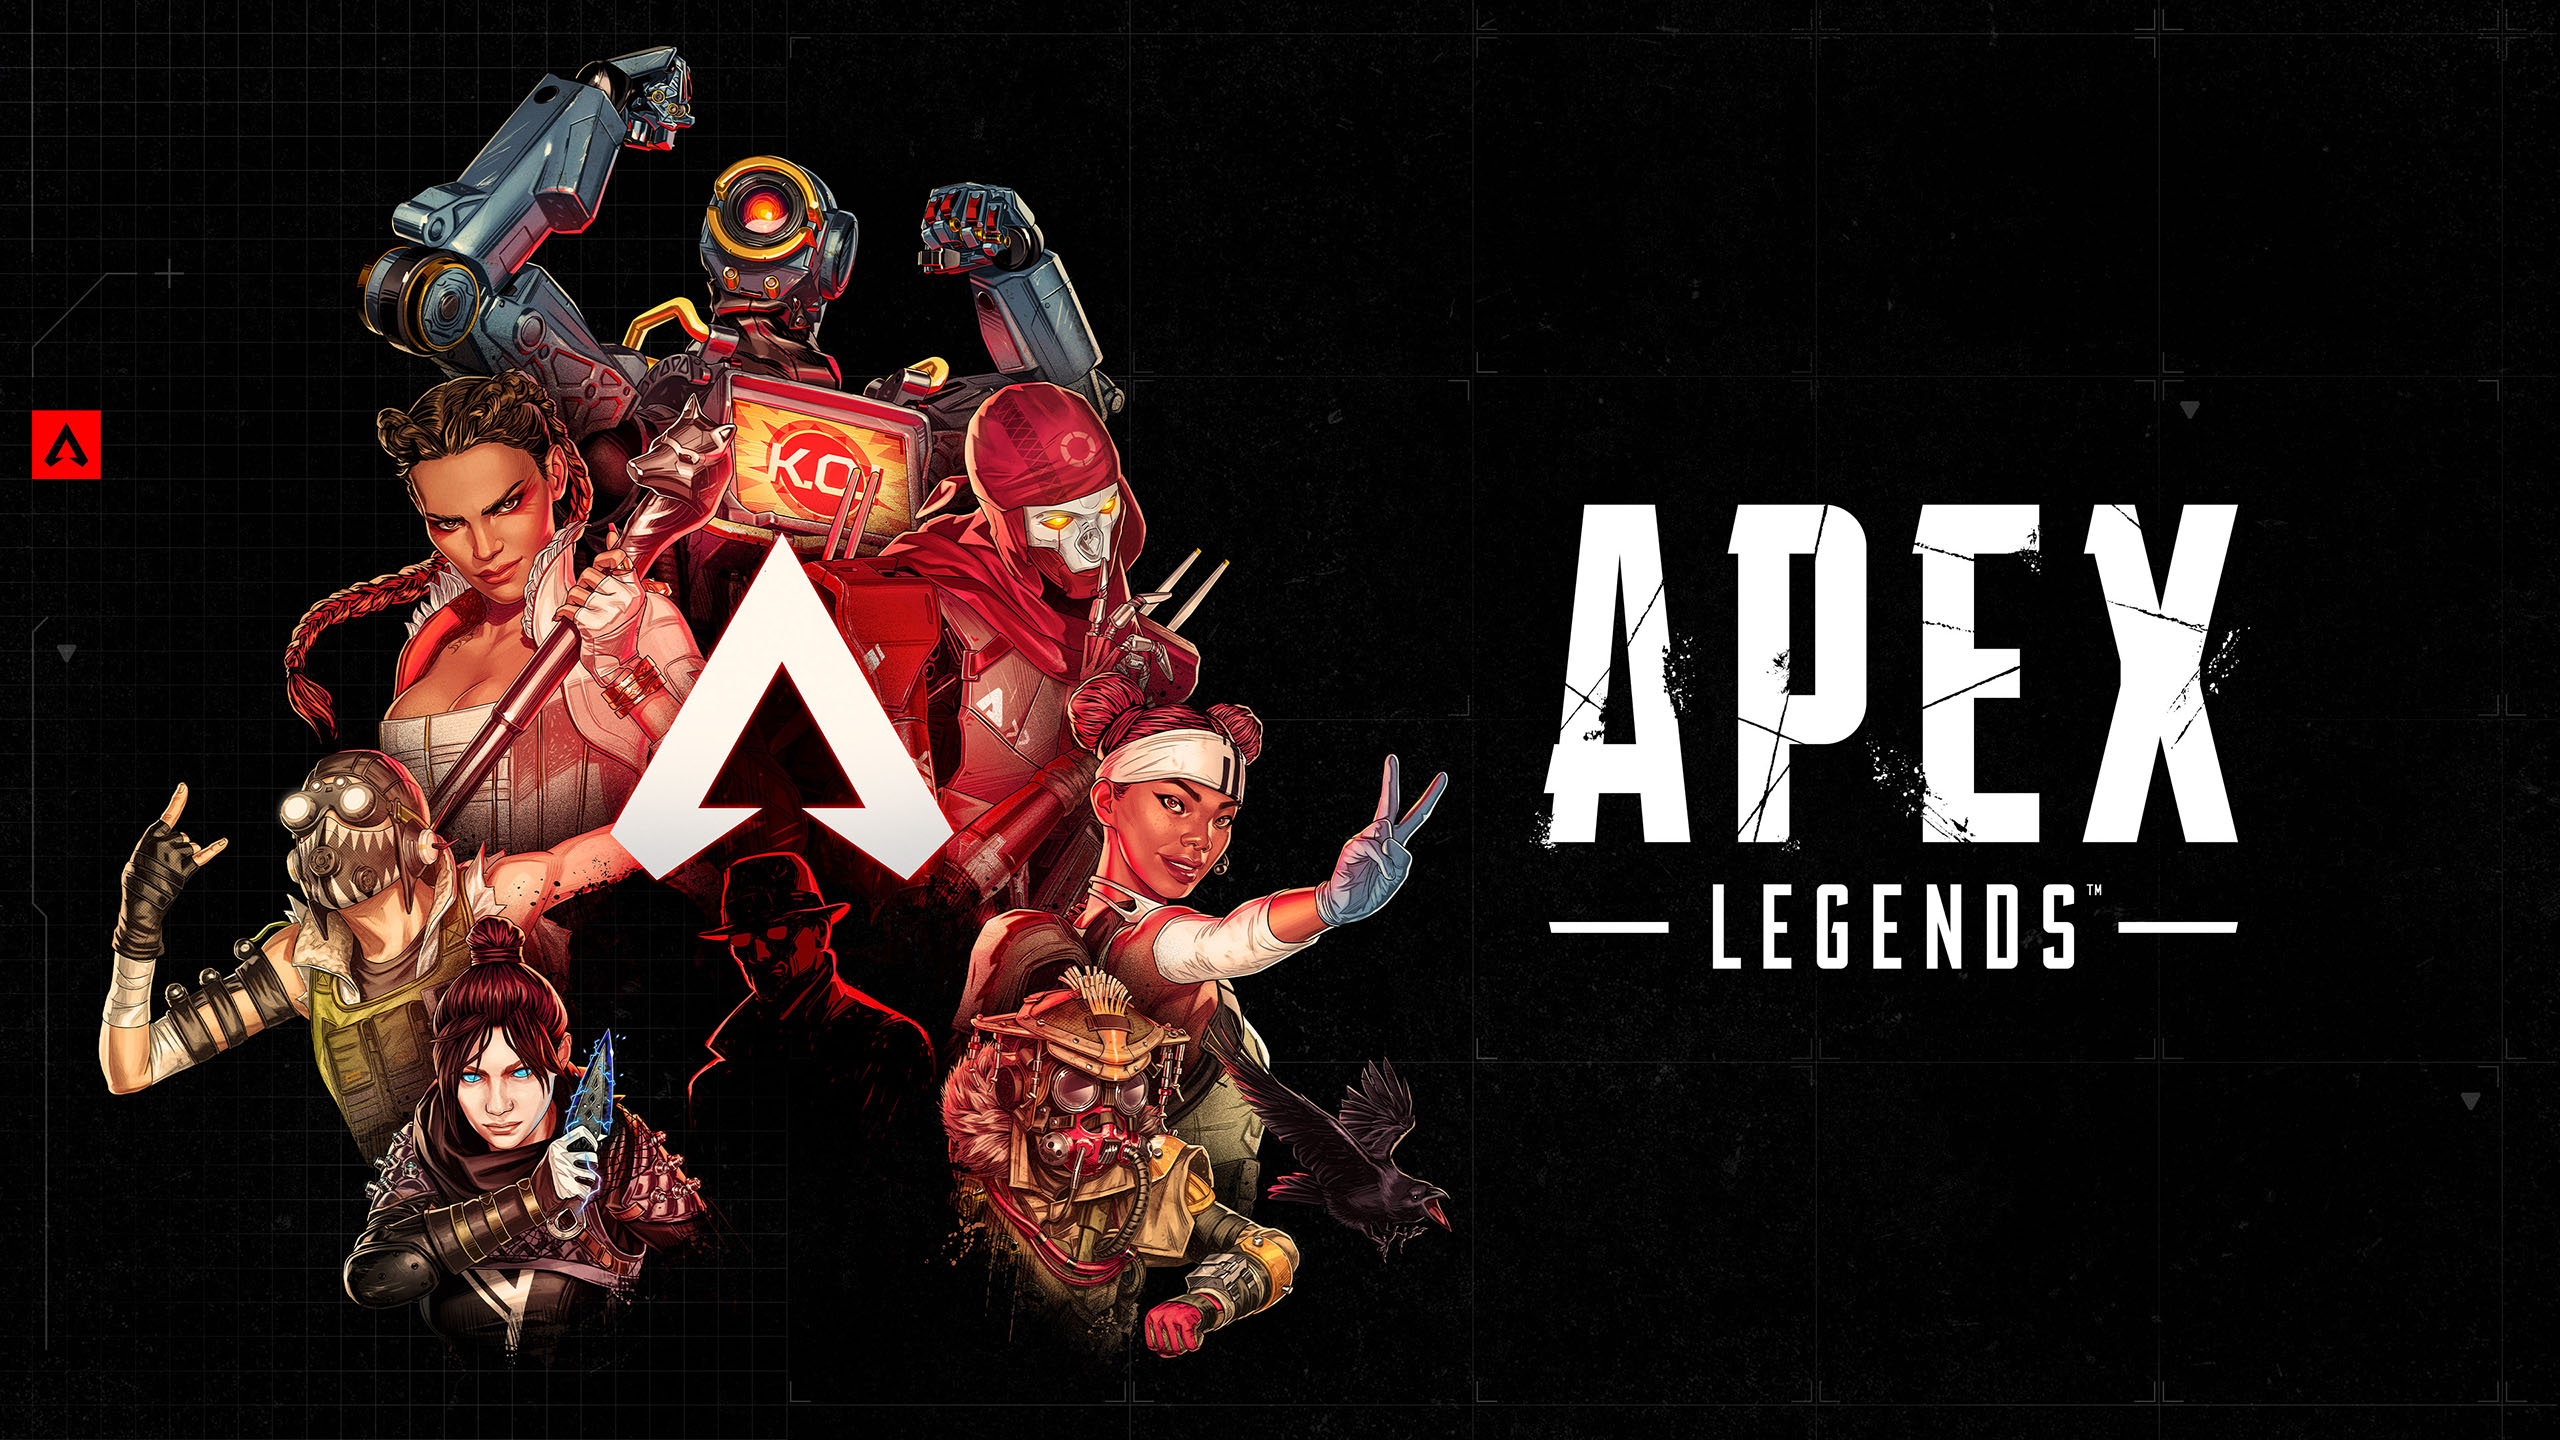 𝗚𝗲𝗙𝗼𝗿𝗰𝗲 𝗡𝗼𝘄 𝗦𝗼𝘂𝗿𝗰𝗲 - Apex Legends™